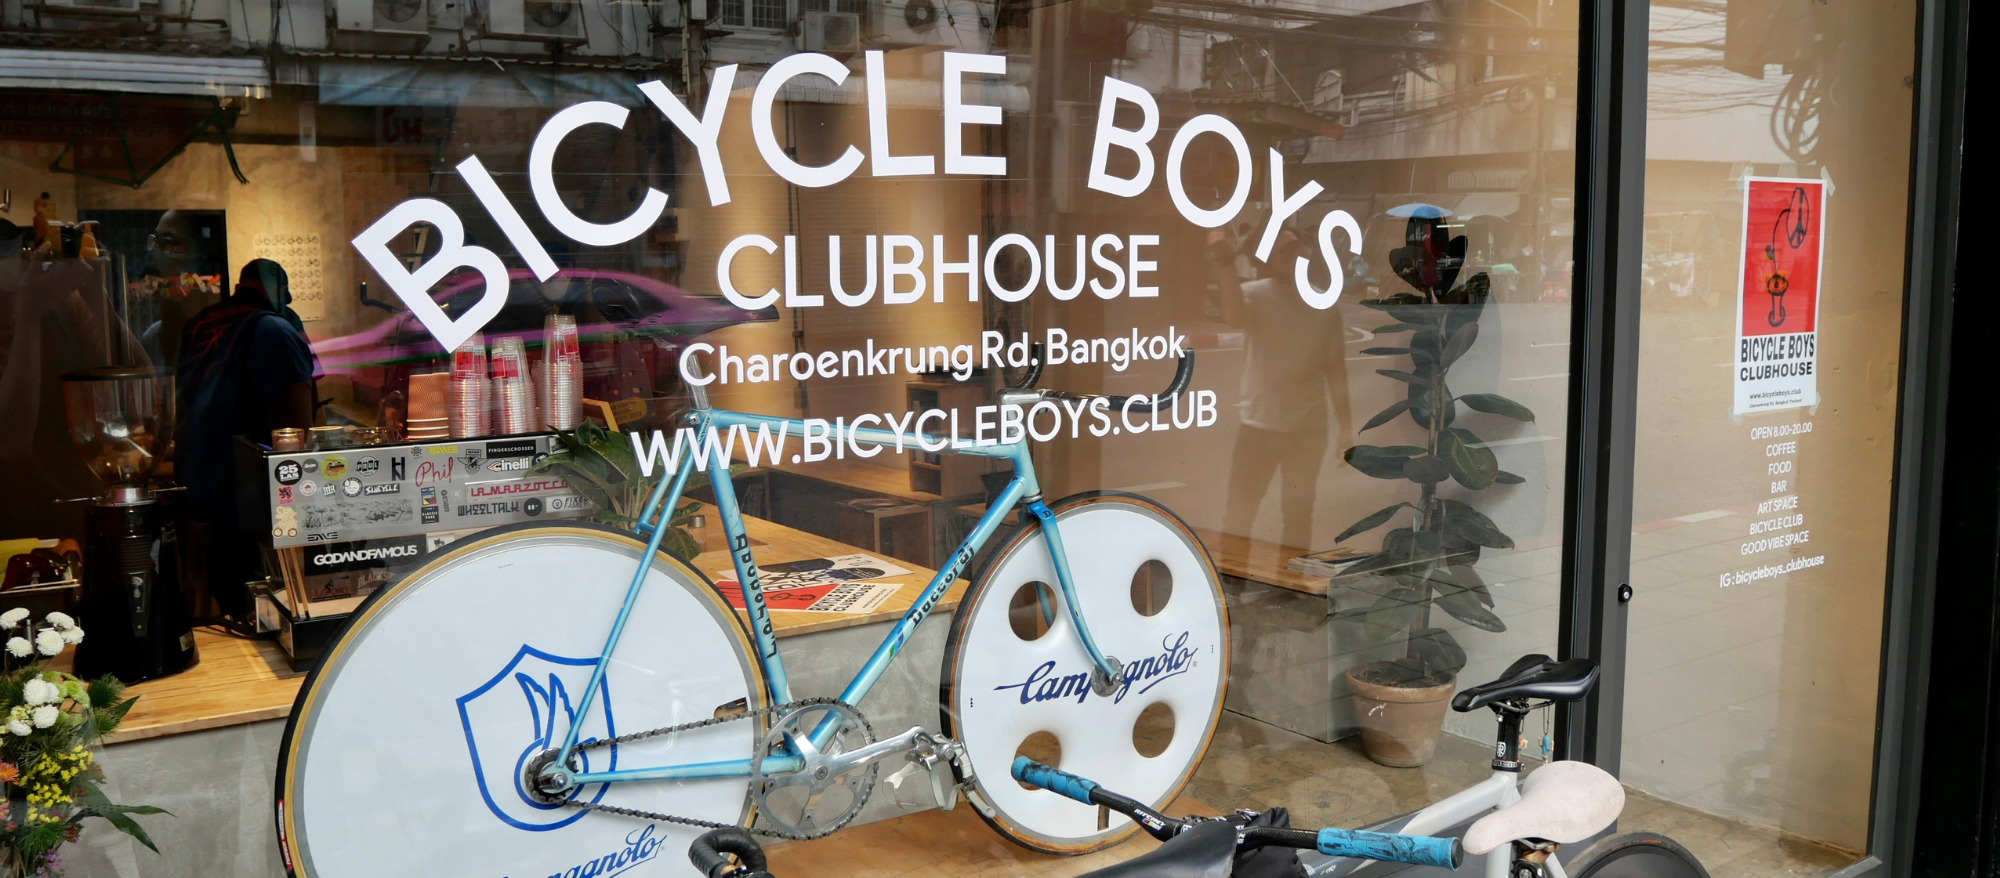 Bicycle Boys Clubhouse คลับเฮ้าส์ที่อยากนำบรรยากาศการปั่นจักรยานในเมืองกลับมาอีกครั้ง